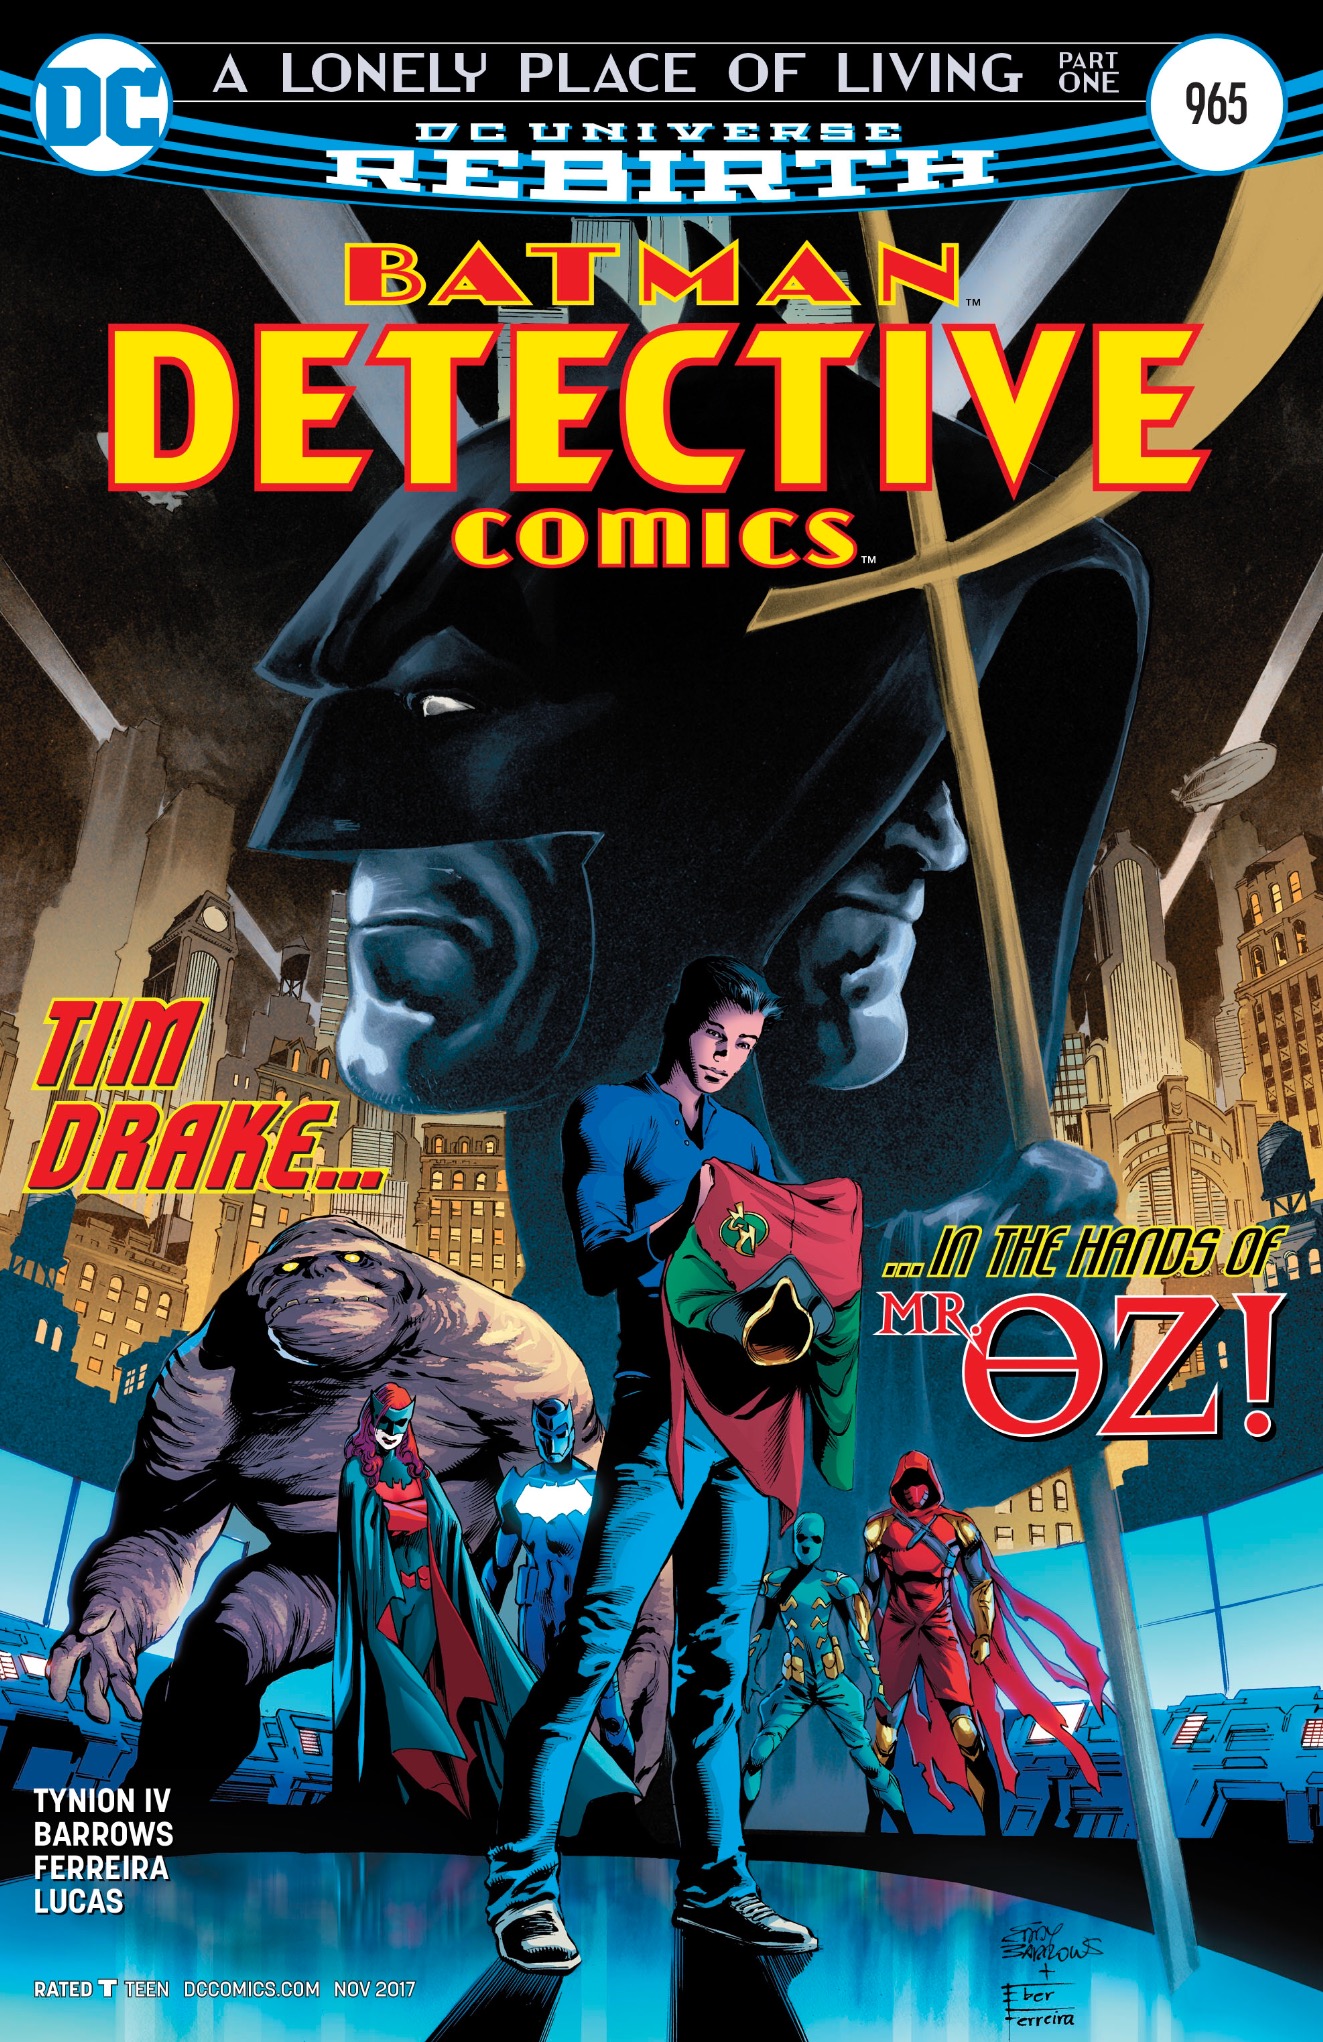 Detective Comics #965 Cover